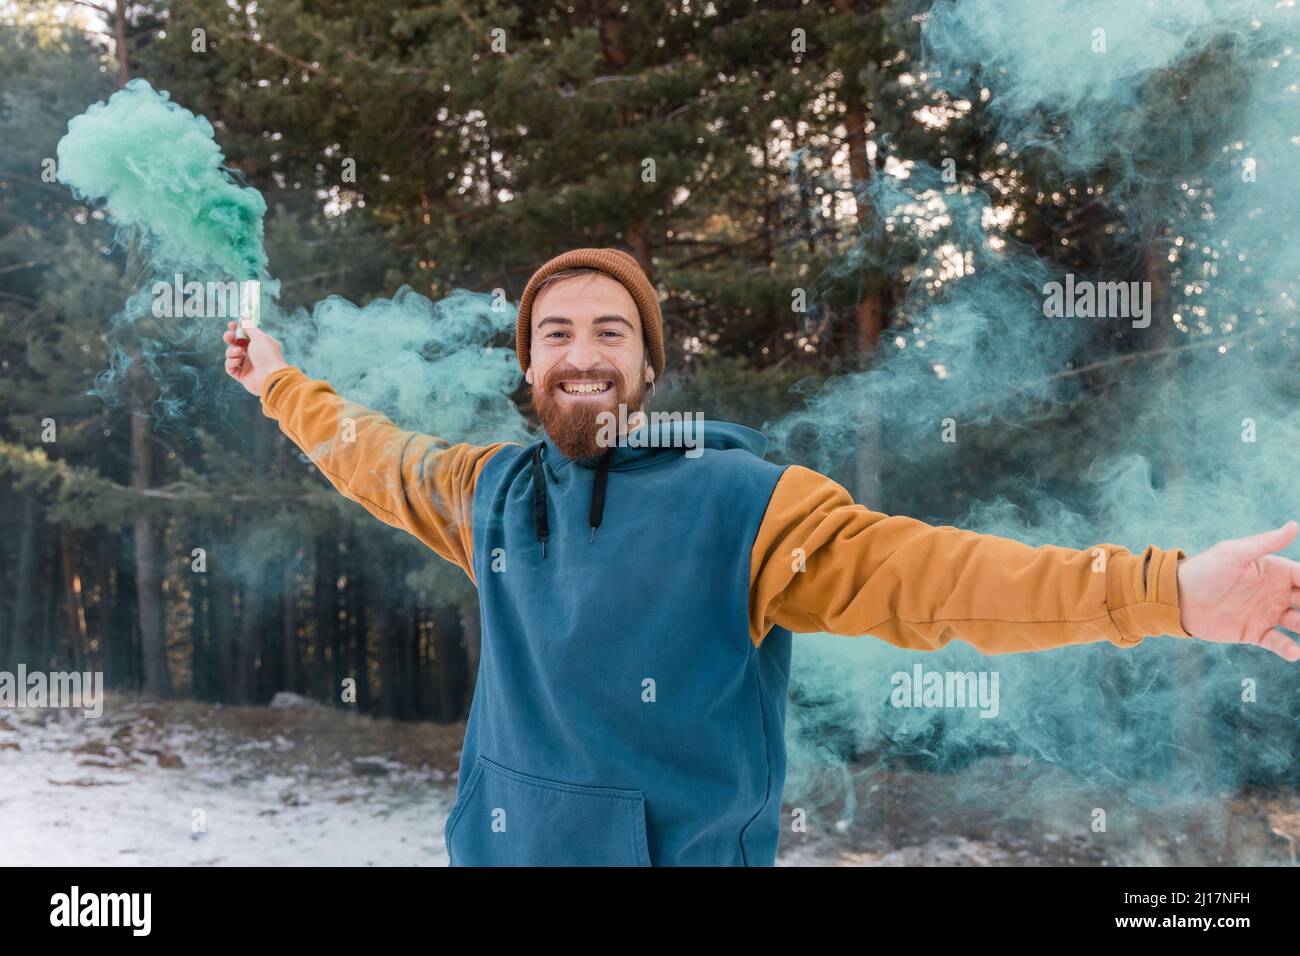 Jeune homme heureux tenant une éruption de détresse bleue dans la forêt Banque D'Images